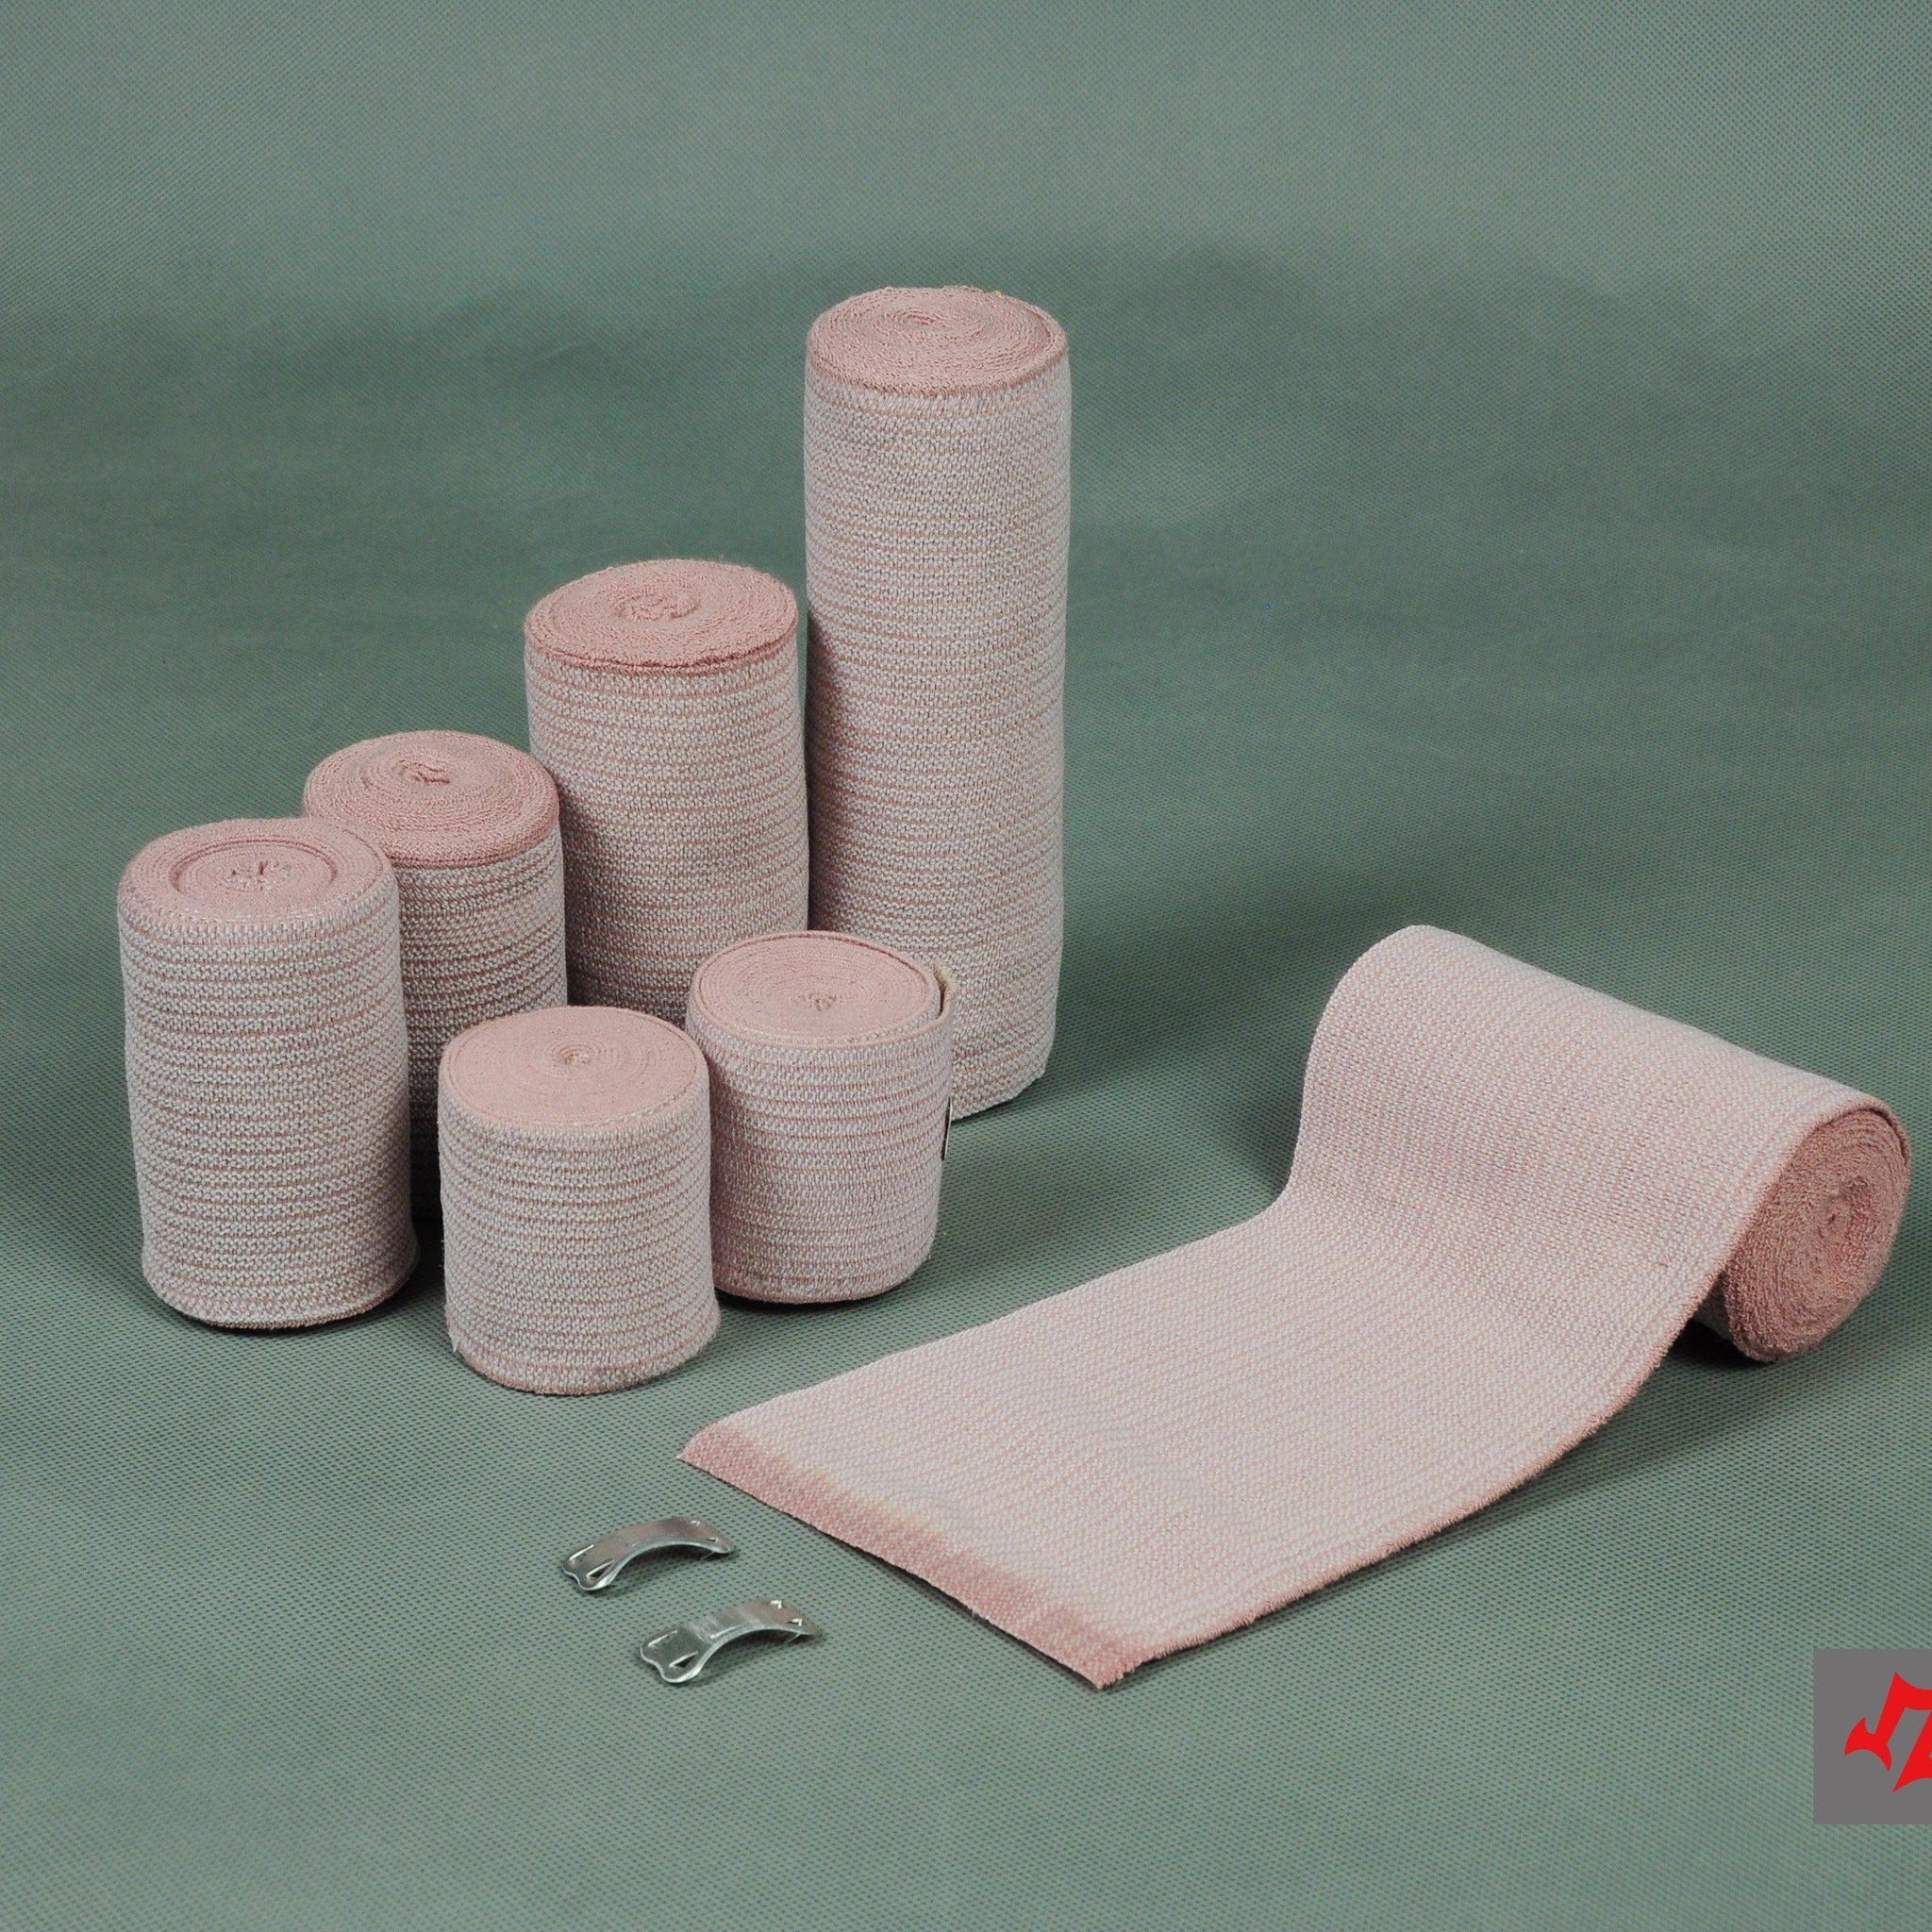 ZOYER Medical - Bandage Set - ZoyerUSA